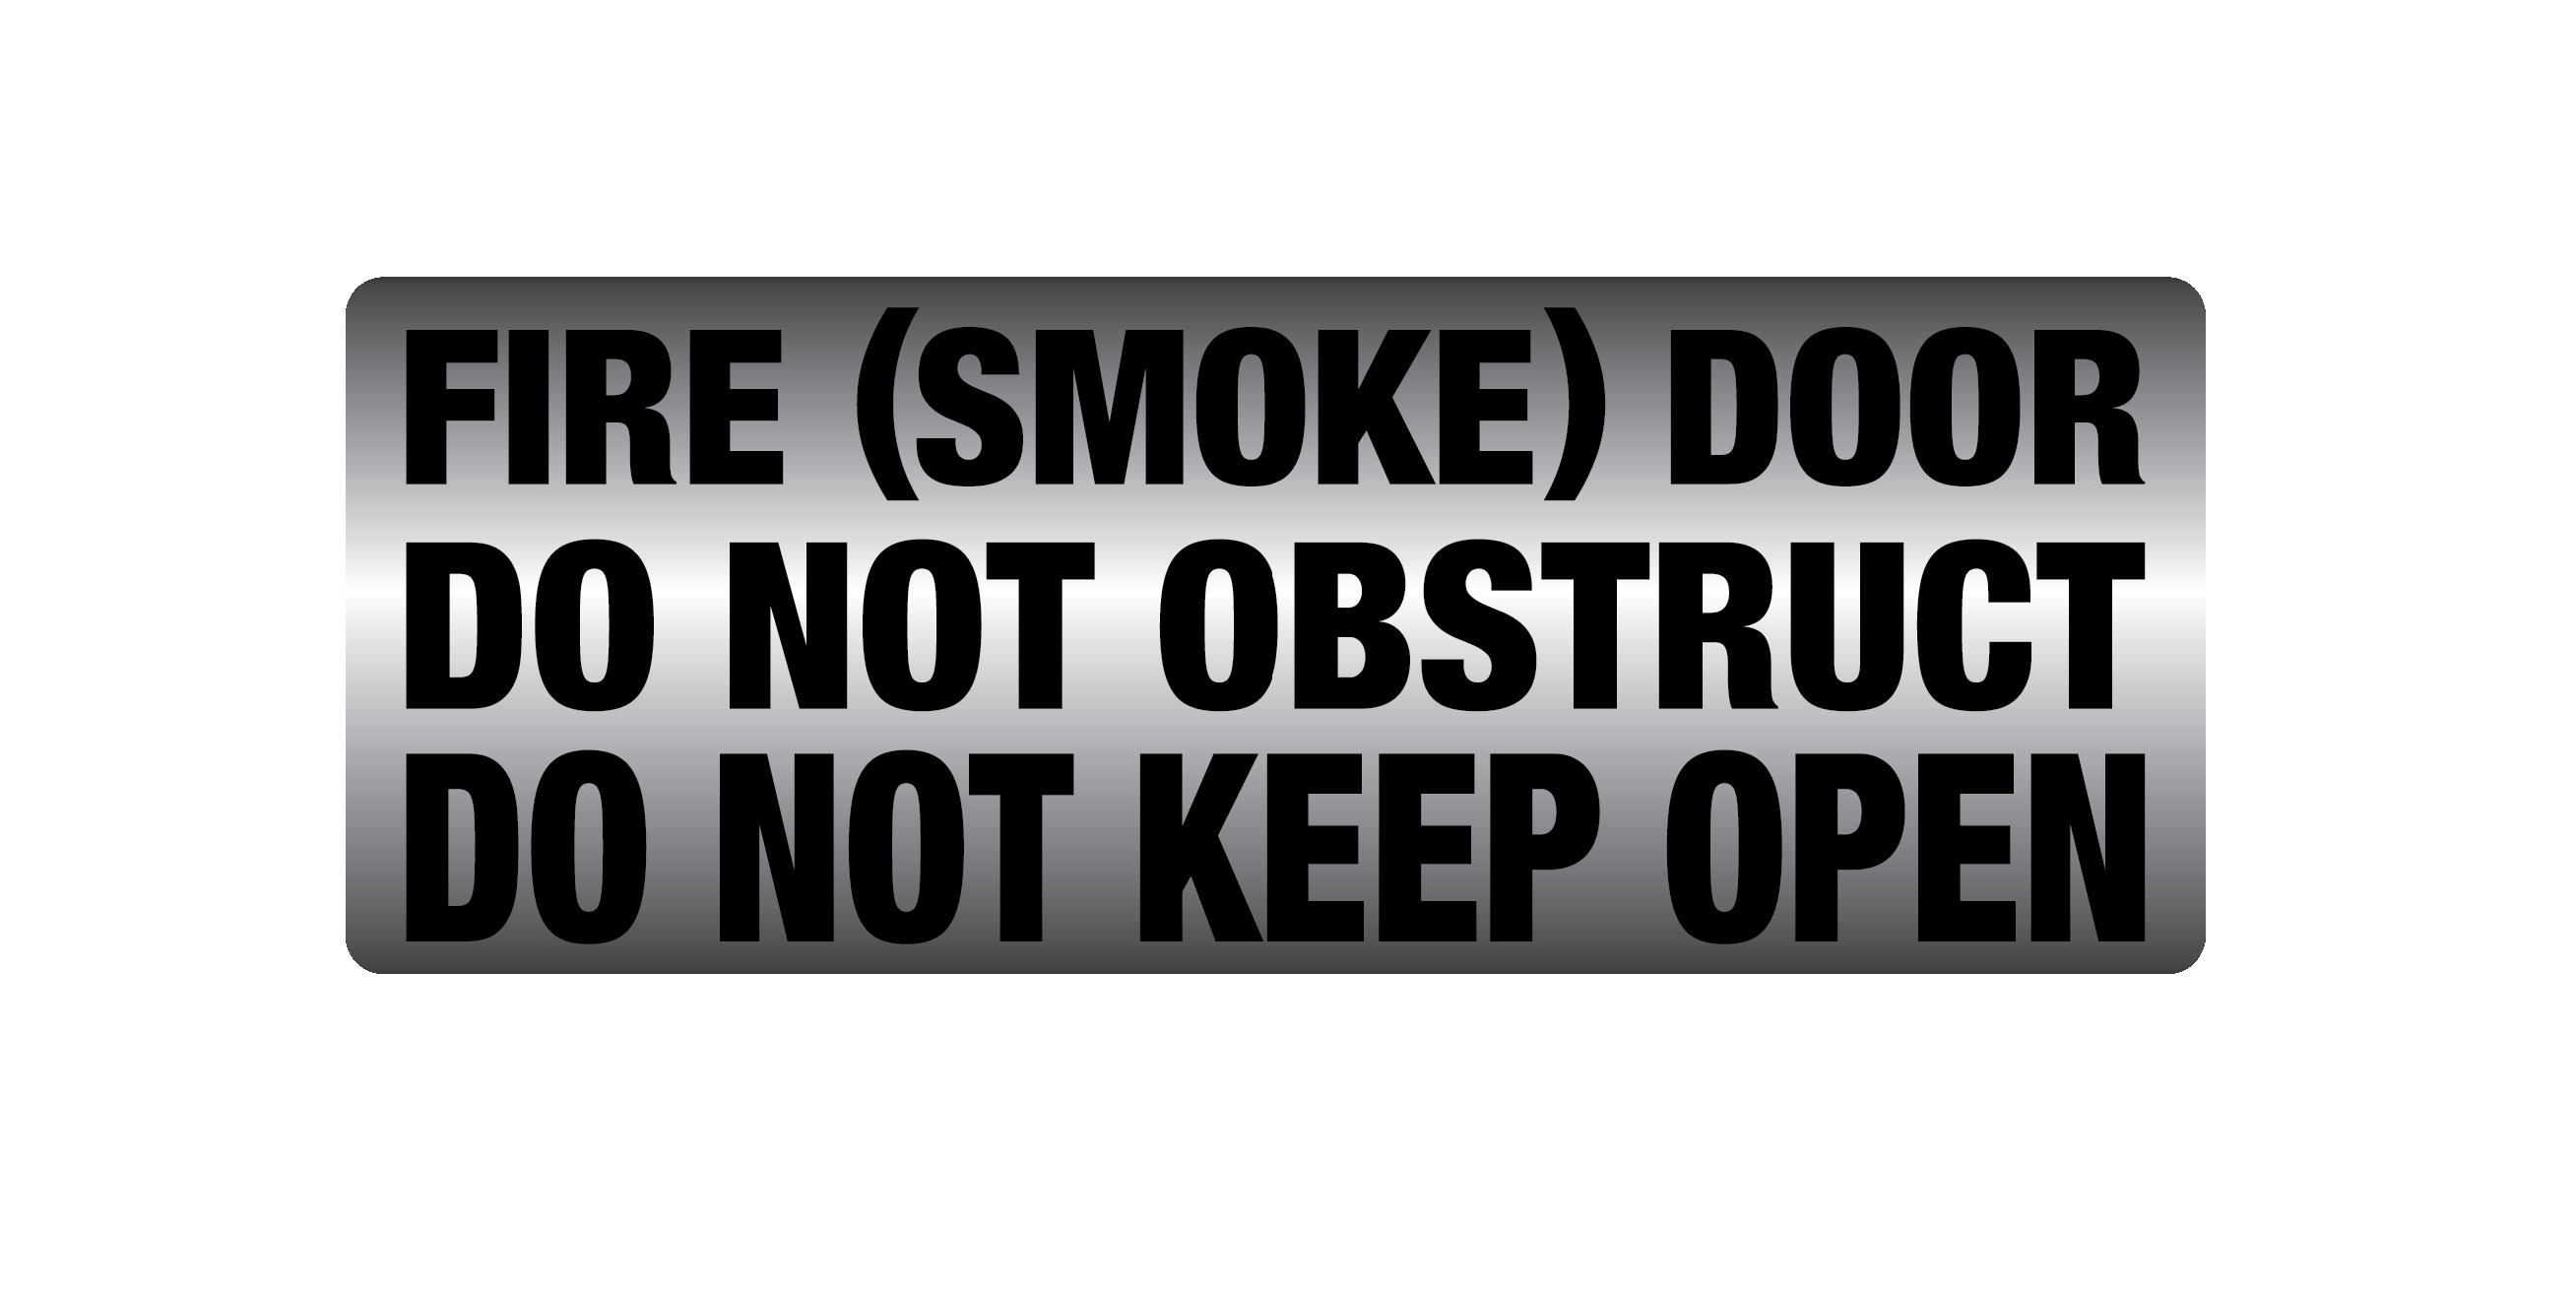 Metal finish PVC Fire smoke door do not obstruct do not keep open Sign - Premium  from Firebox - Shop now at Firebox Australia